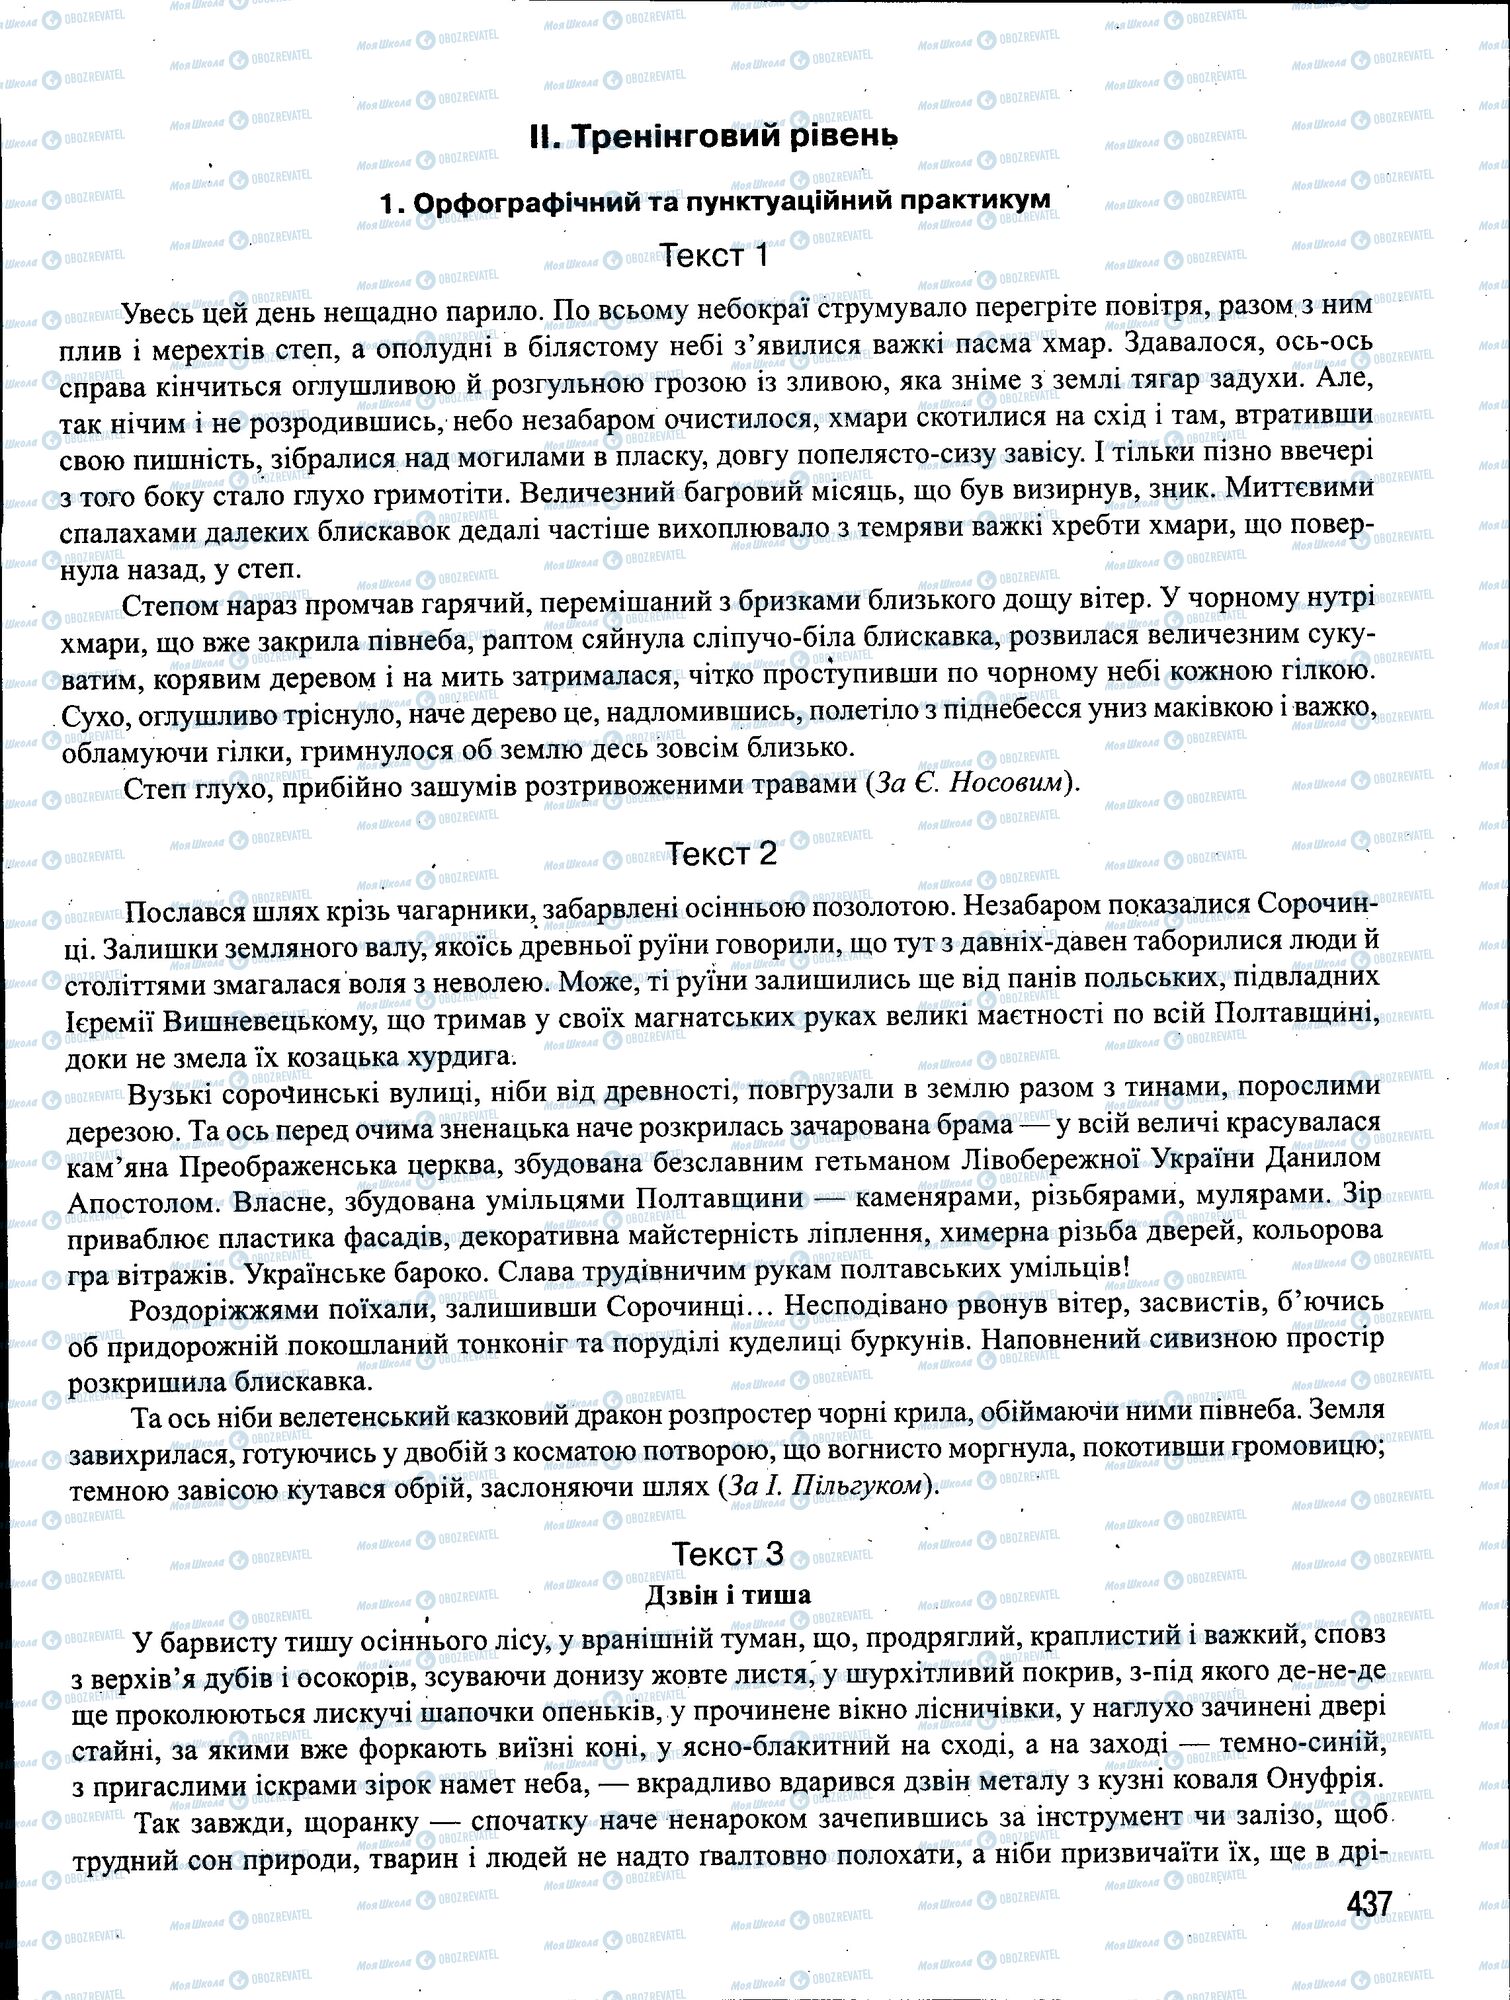 ЗНО Укр мова 11 класс страница 437